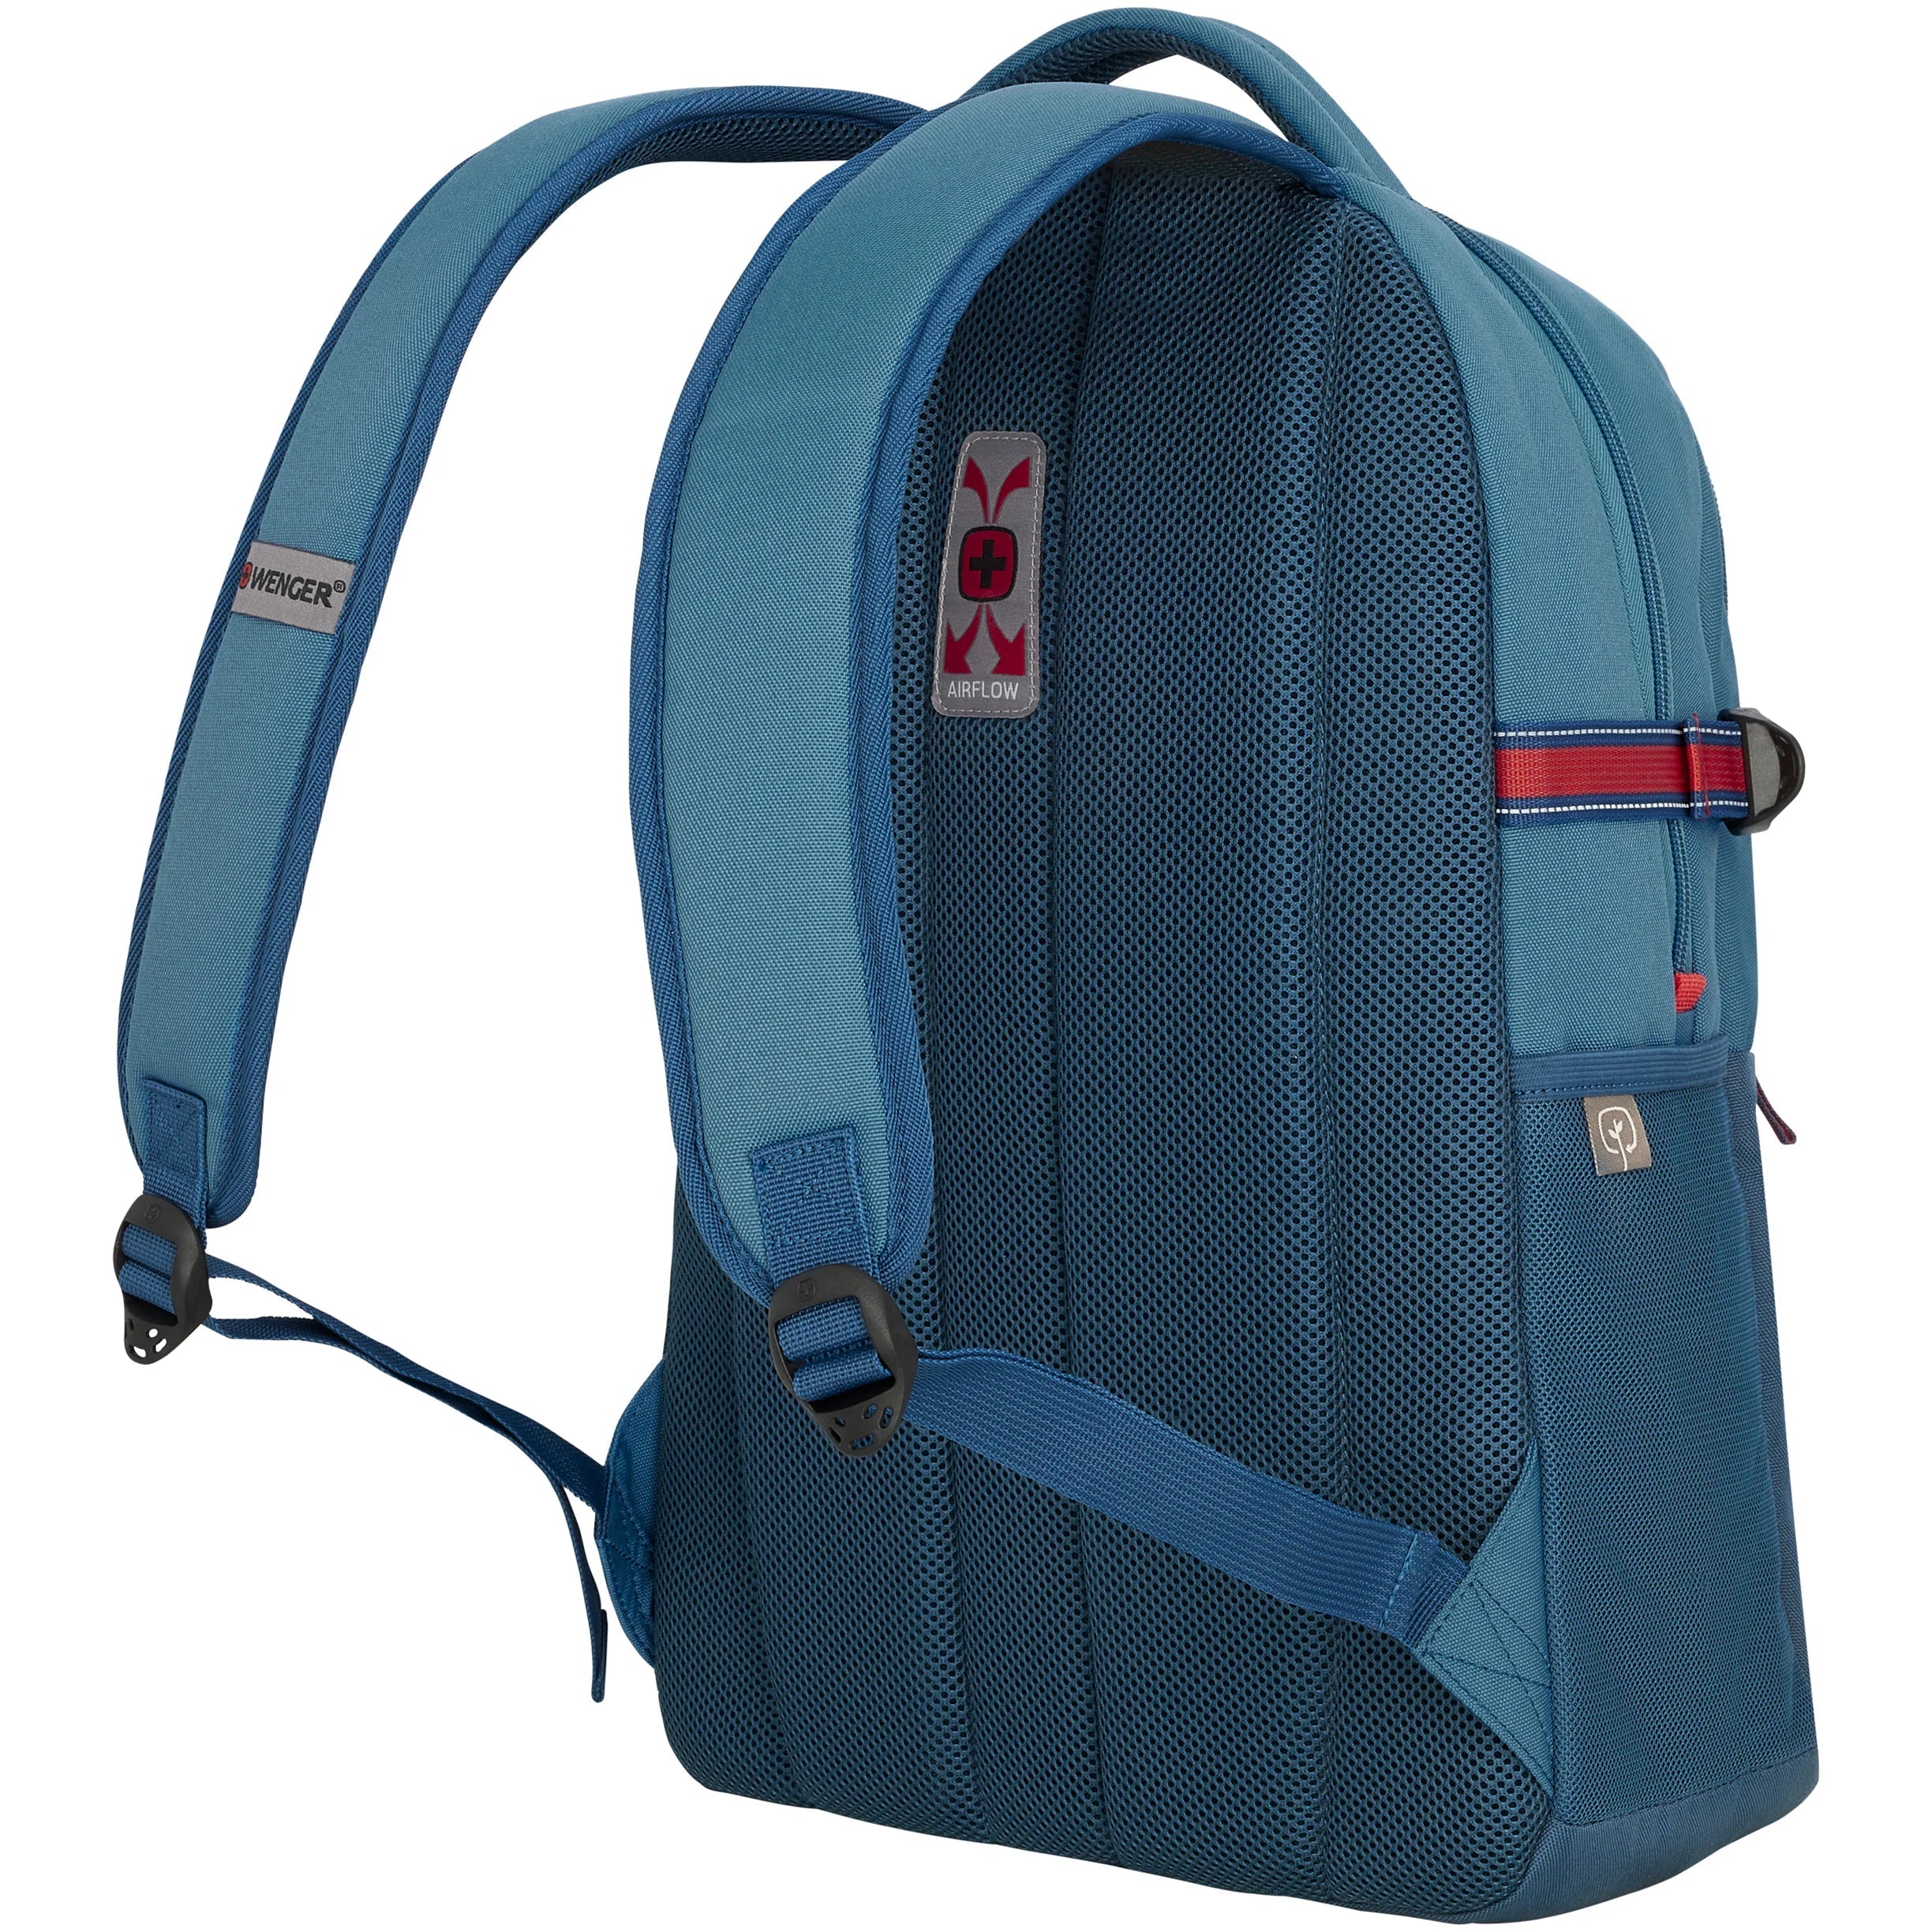 Wenger Business Backpacks NEXT22 Ryde Sac à dos pour ordinateur portable 47 cm - Bleu/Denim